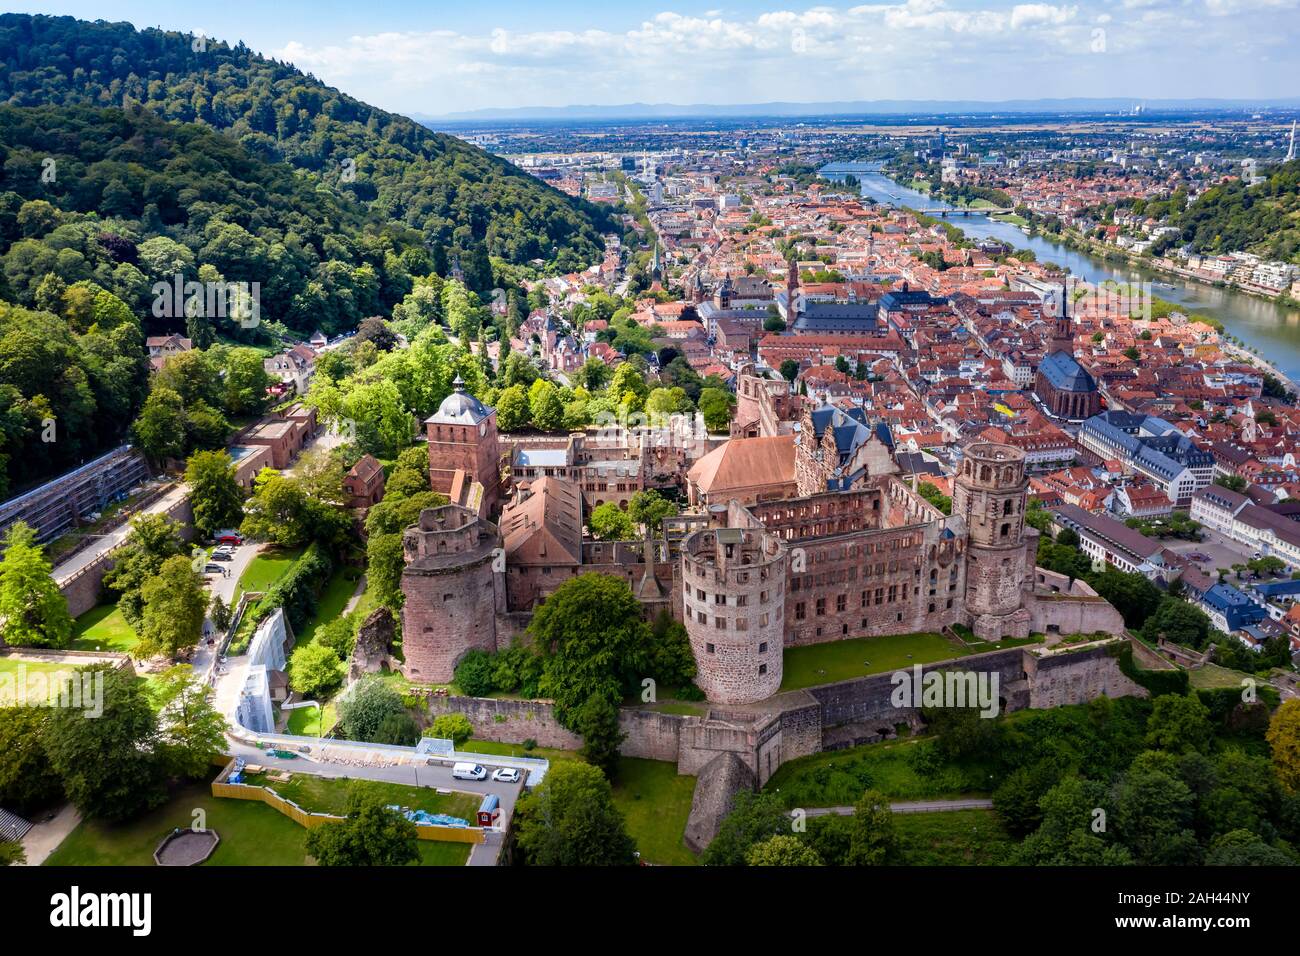 Alemania, Baden-Wurttemberg, Heidelberg, vista aérea del Castillo de Heidelberg en verano Foto de stock